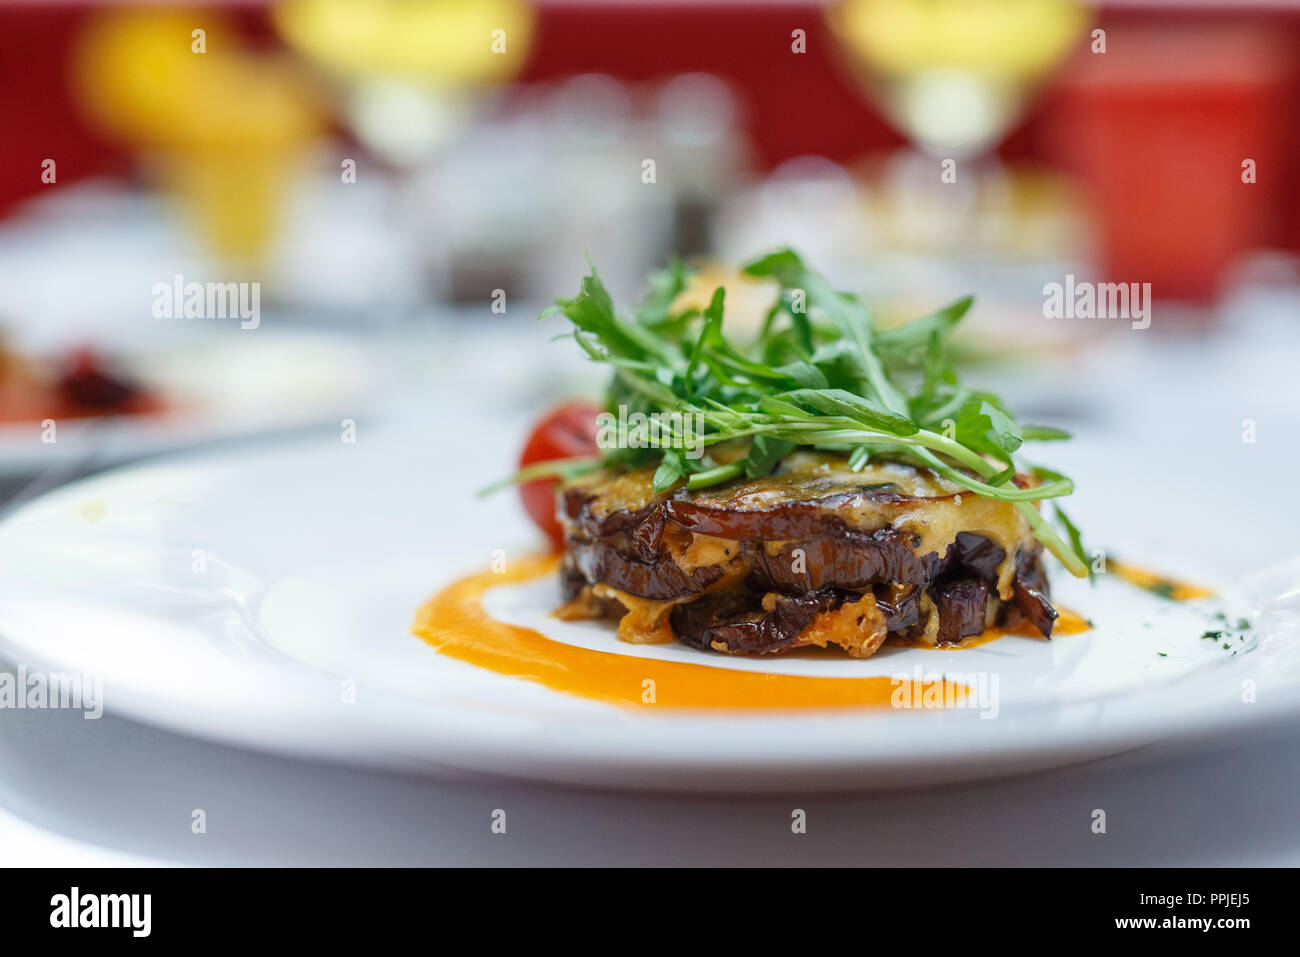 Chiudere il cibo fotografia / gastronomia occidentale piatti di cucina Foto Stock